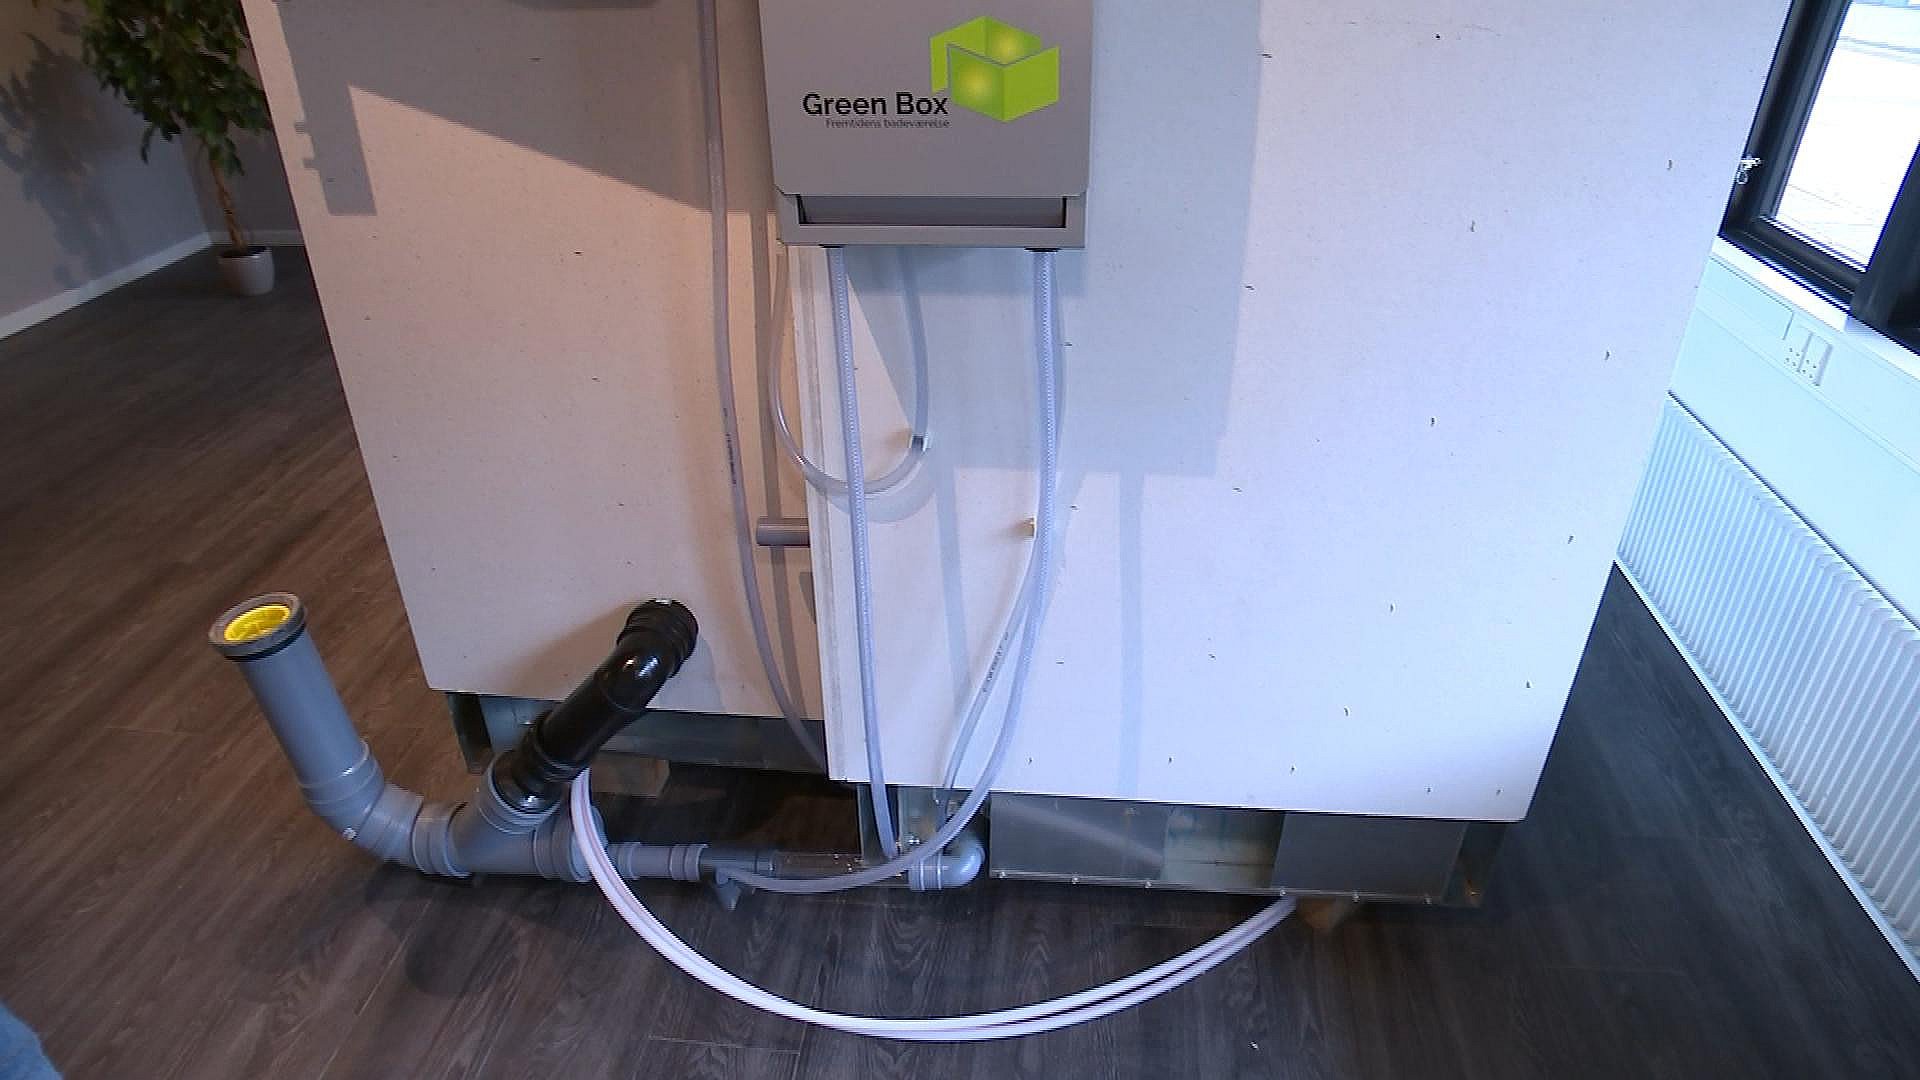 Aulum-virksomhed opfindelse: Nu kan du genbruge badevandet toiletskyl TV MIDTVEST